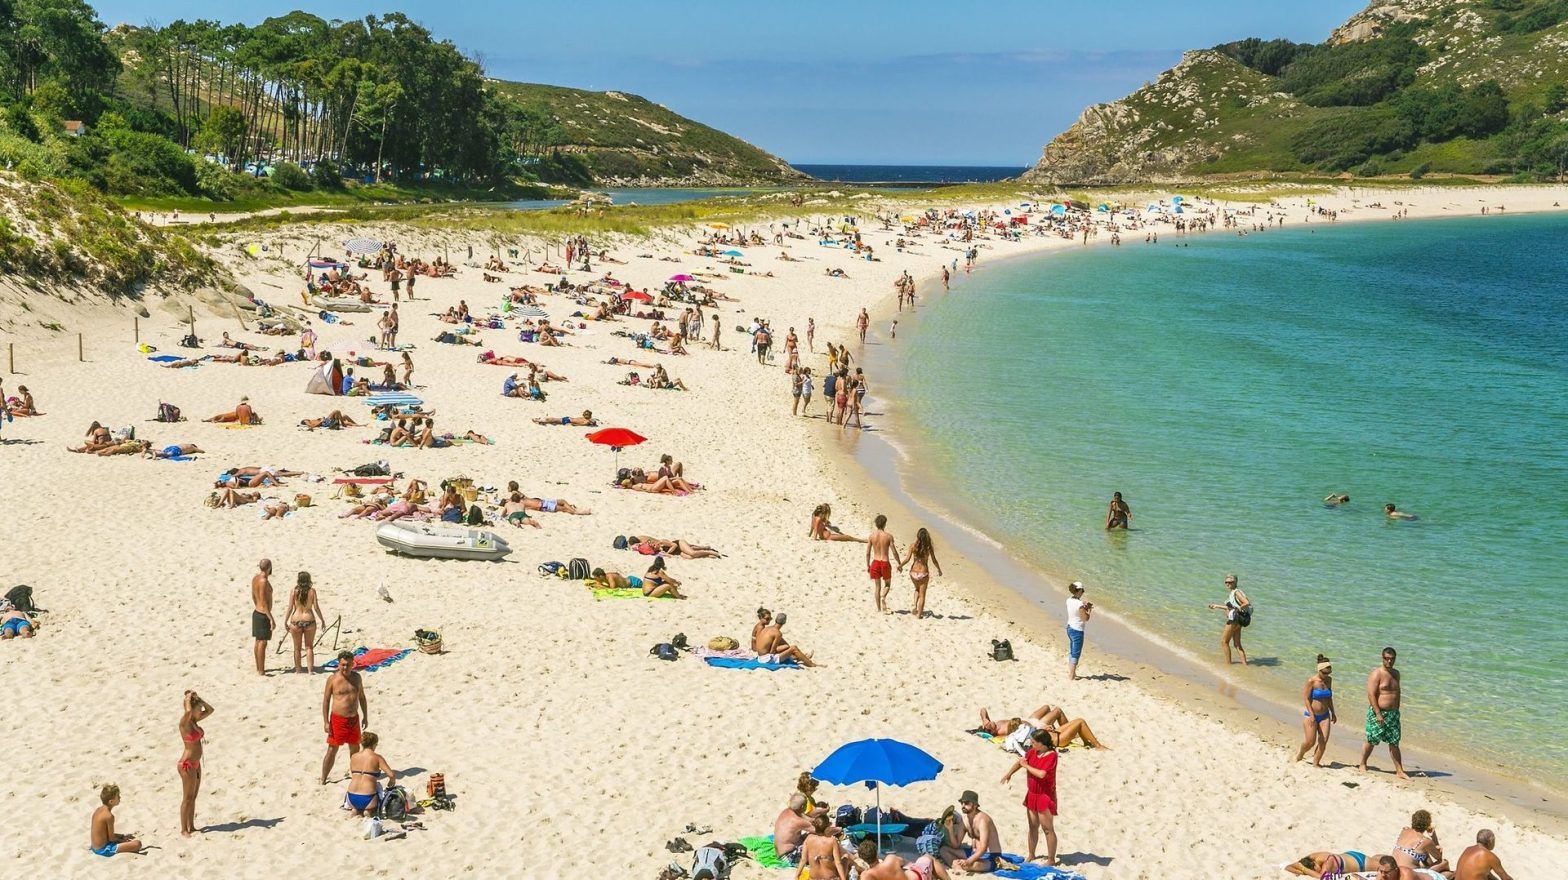 Espagne : uriner sur les plages ou dans la mer peut coûter 750 euros d'amende